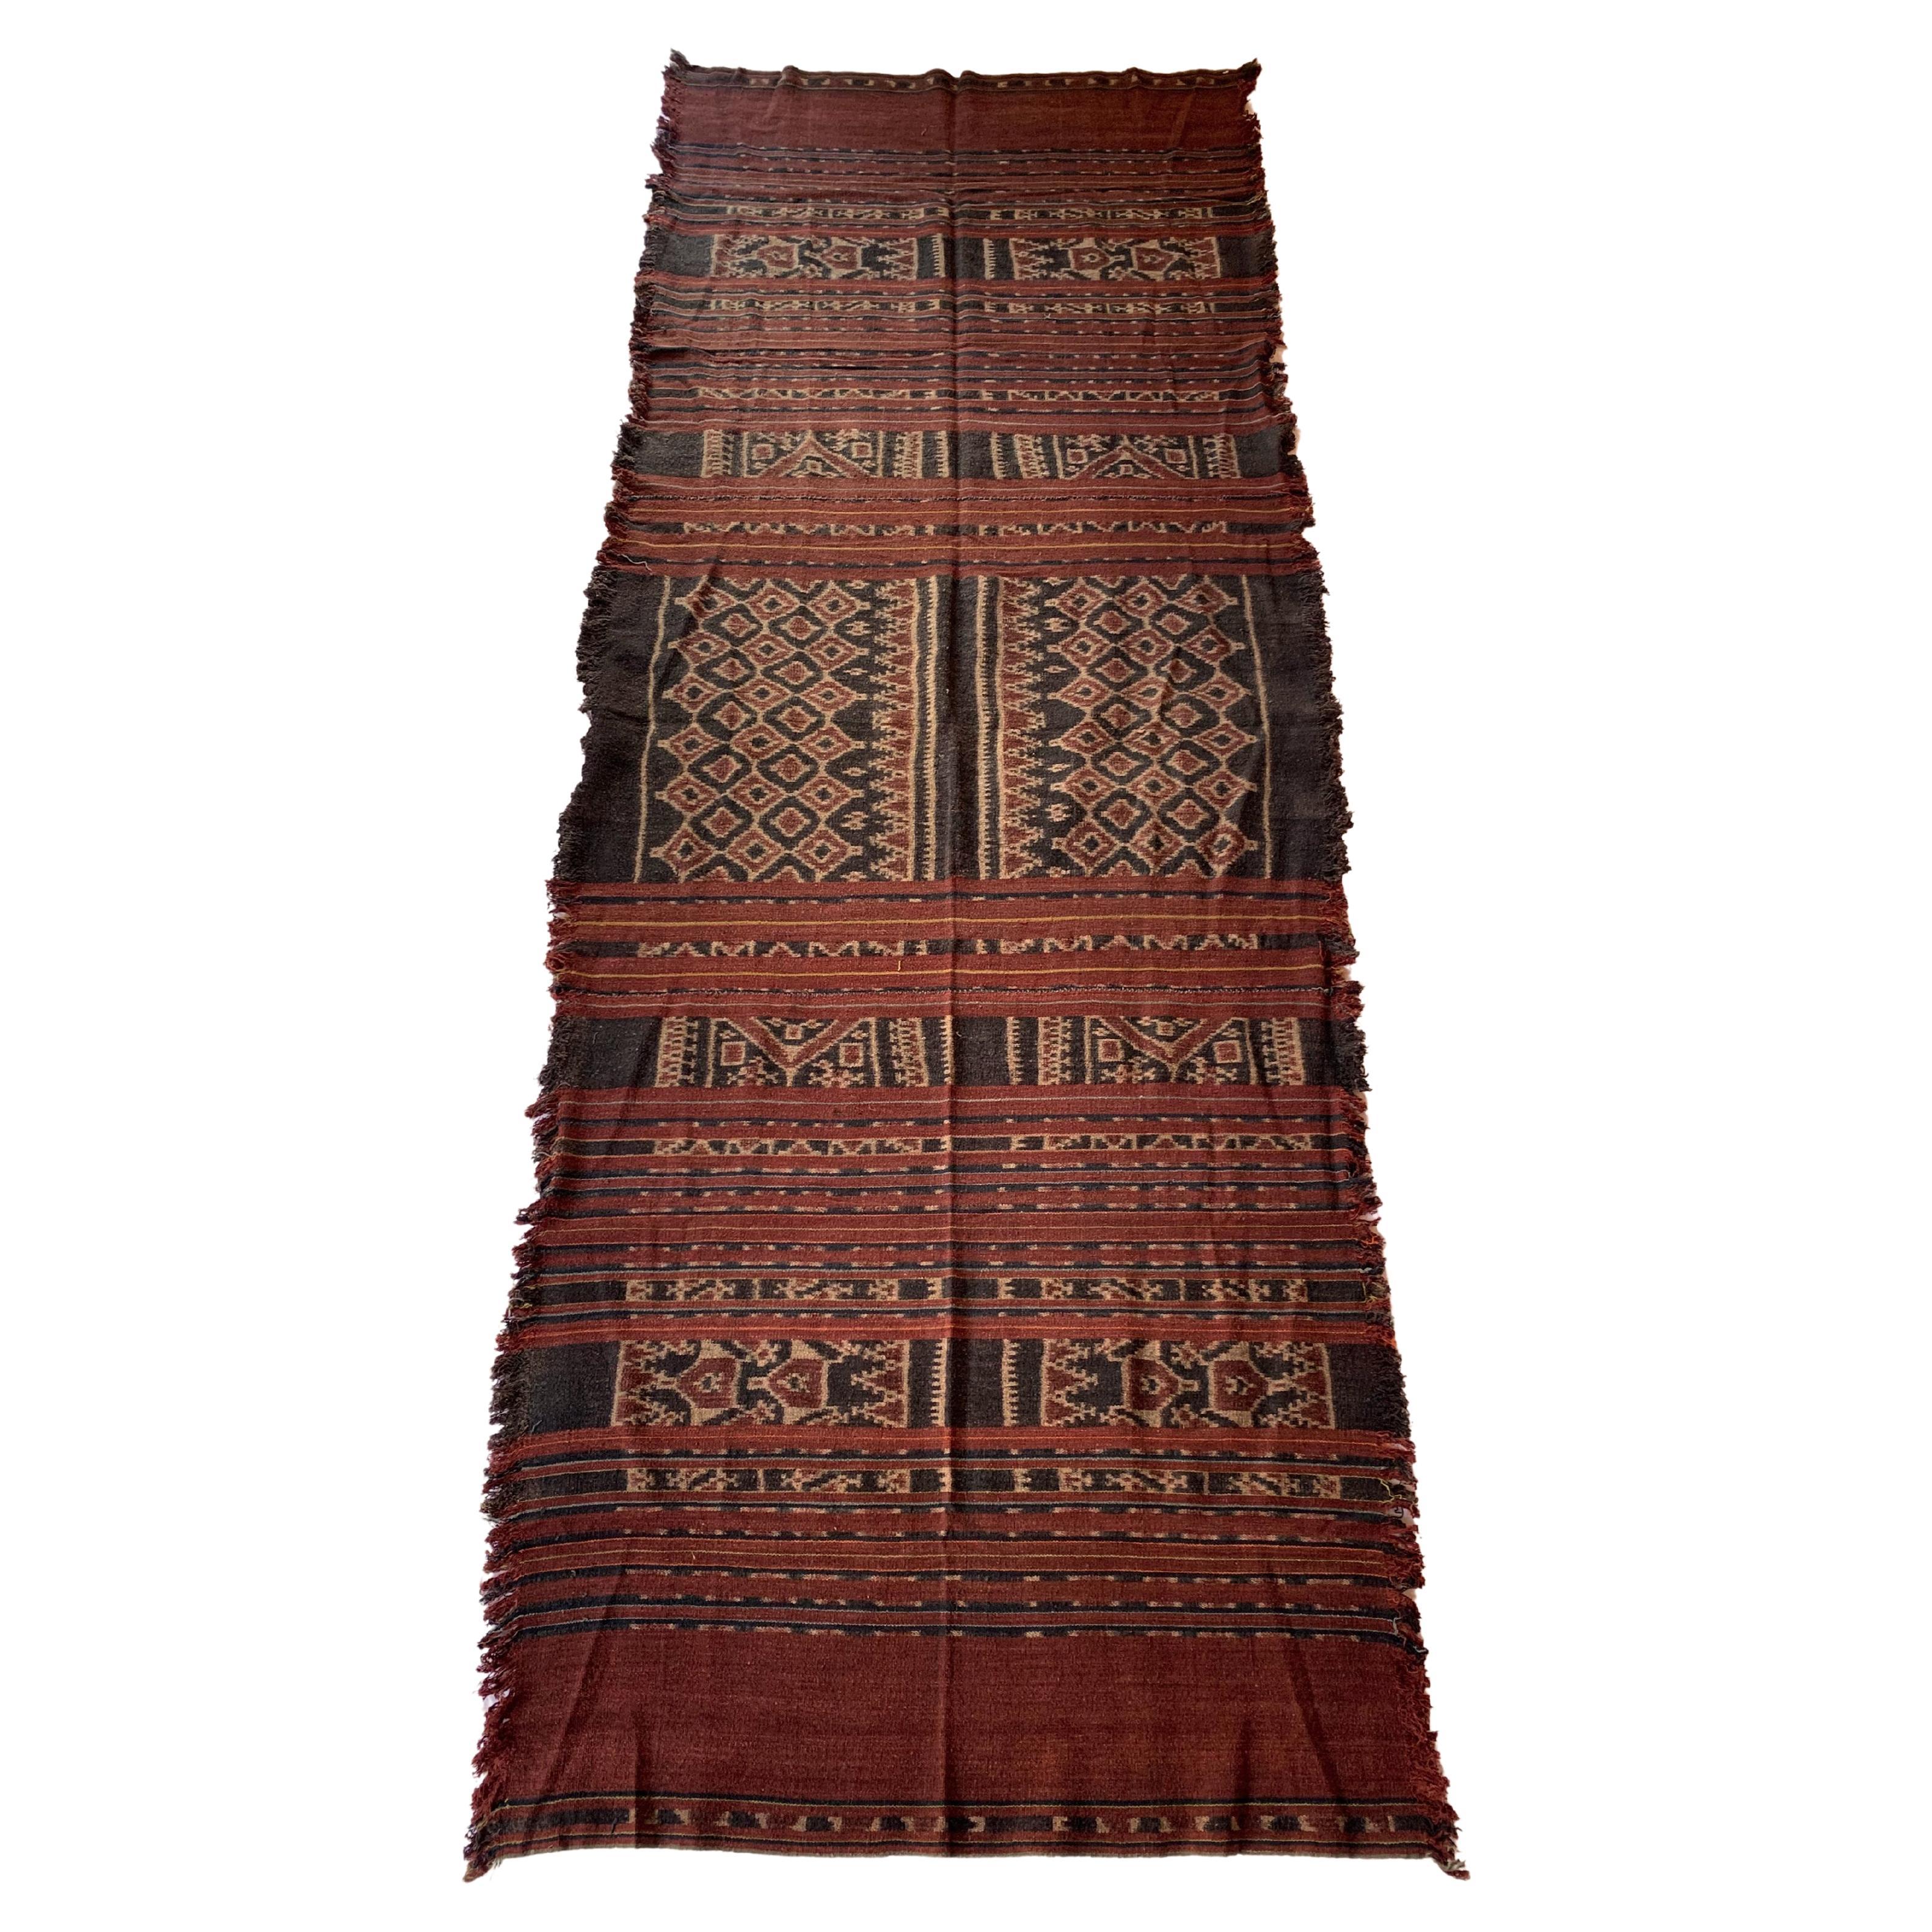 Ikat-Textil des Toraja-Stammes Sulawesi mit atemberaubenden Stammesmotiven, um 1920